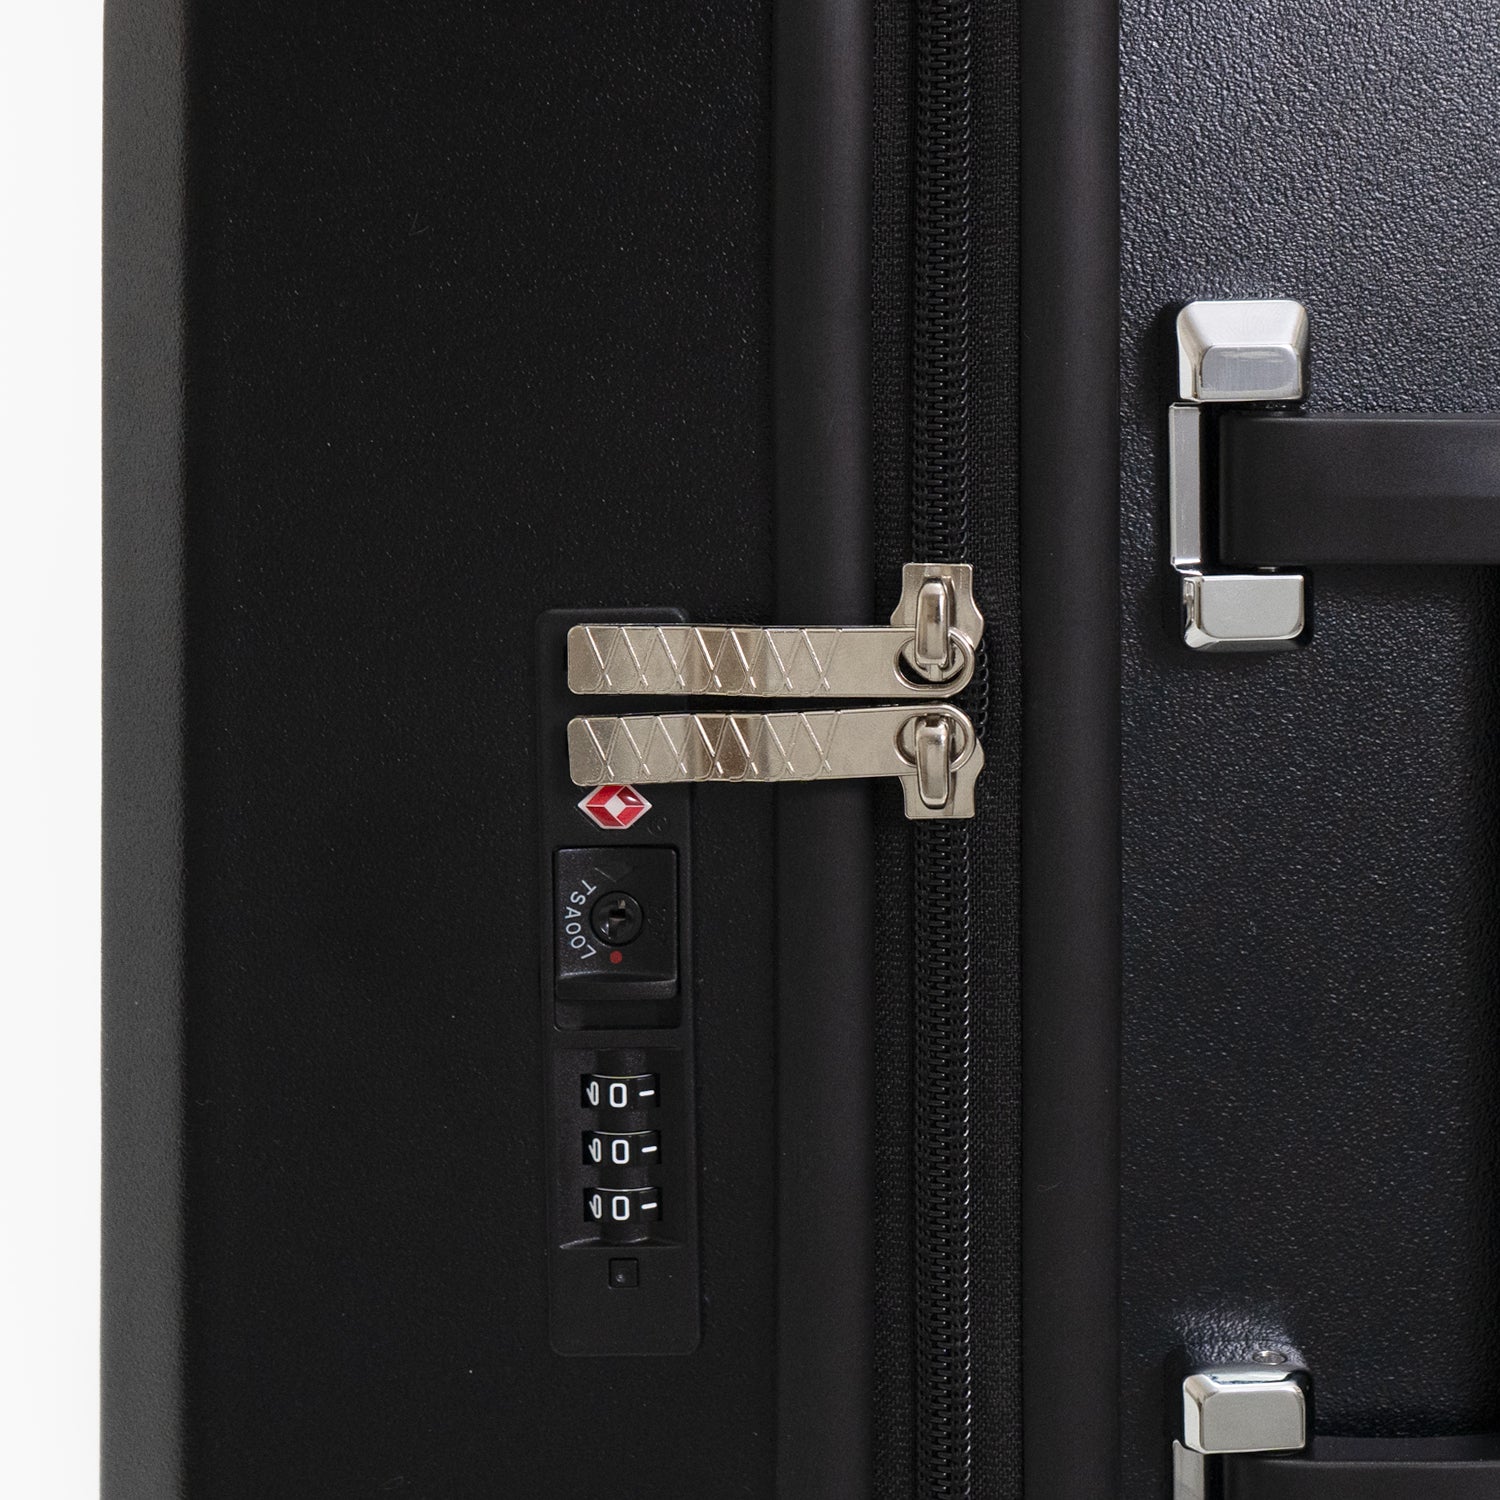 TrunkレザーバンドハードスーツケースにはTS認可ダイヤルロック(Travel Sentry®認可ロック)搭載で、施錠したまま預け入れが可能です。